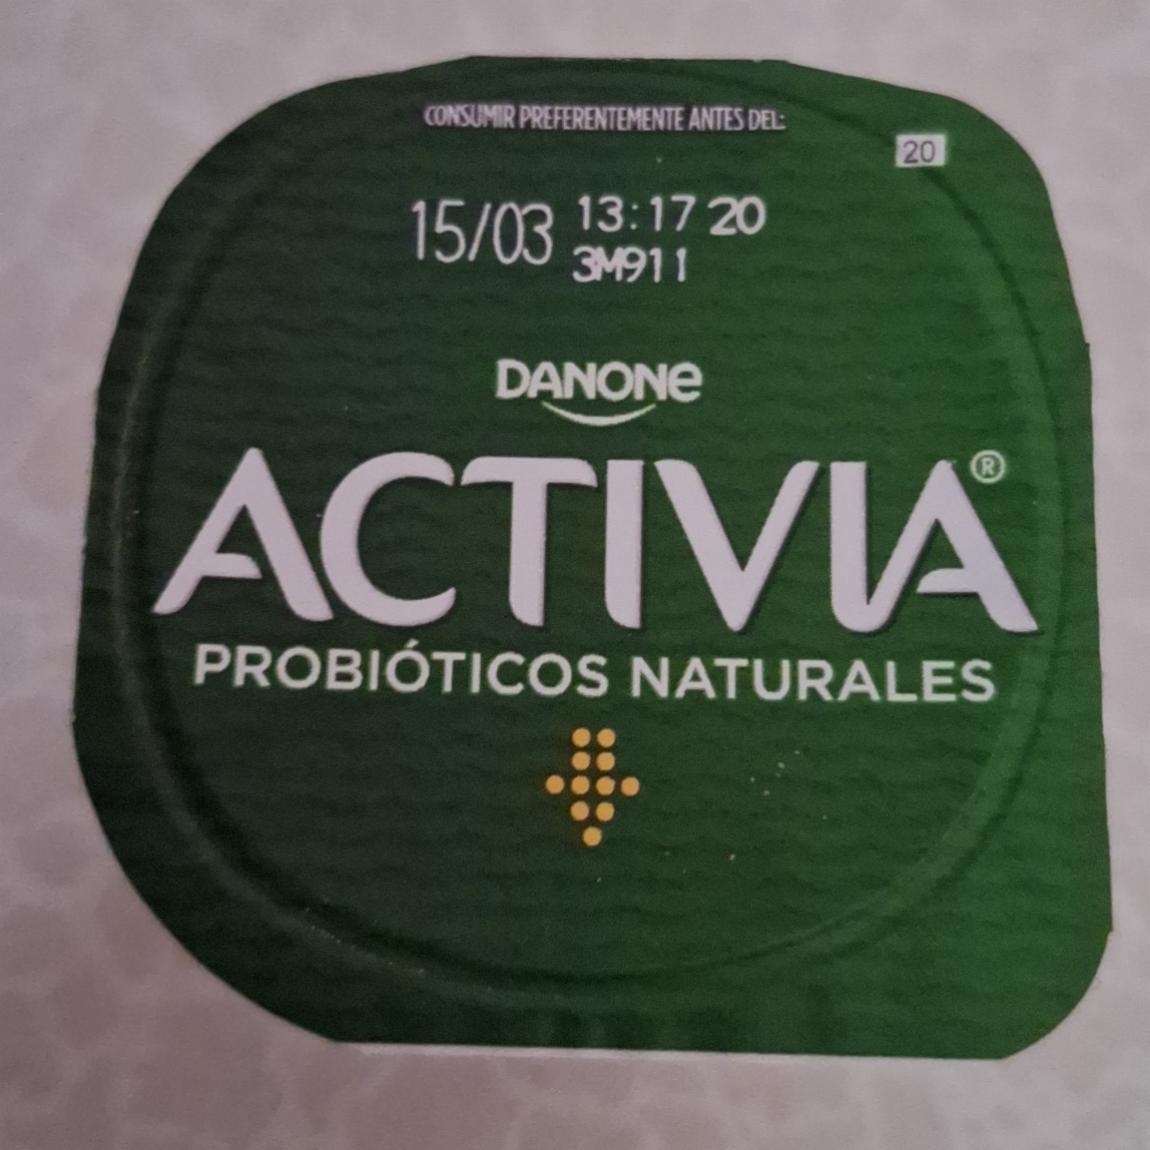 Фото - Activia probióticos naturales Danone